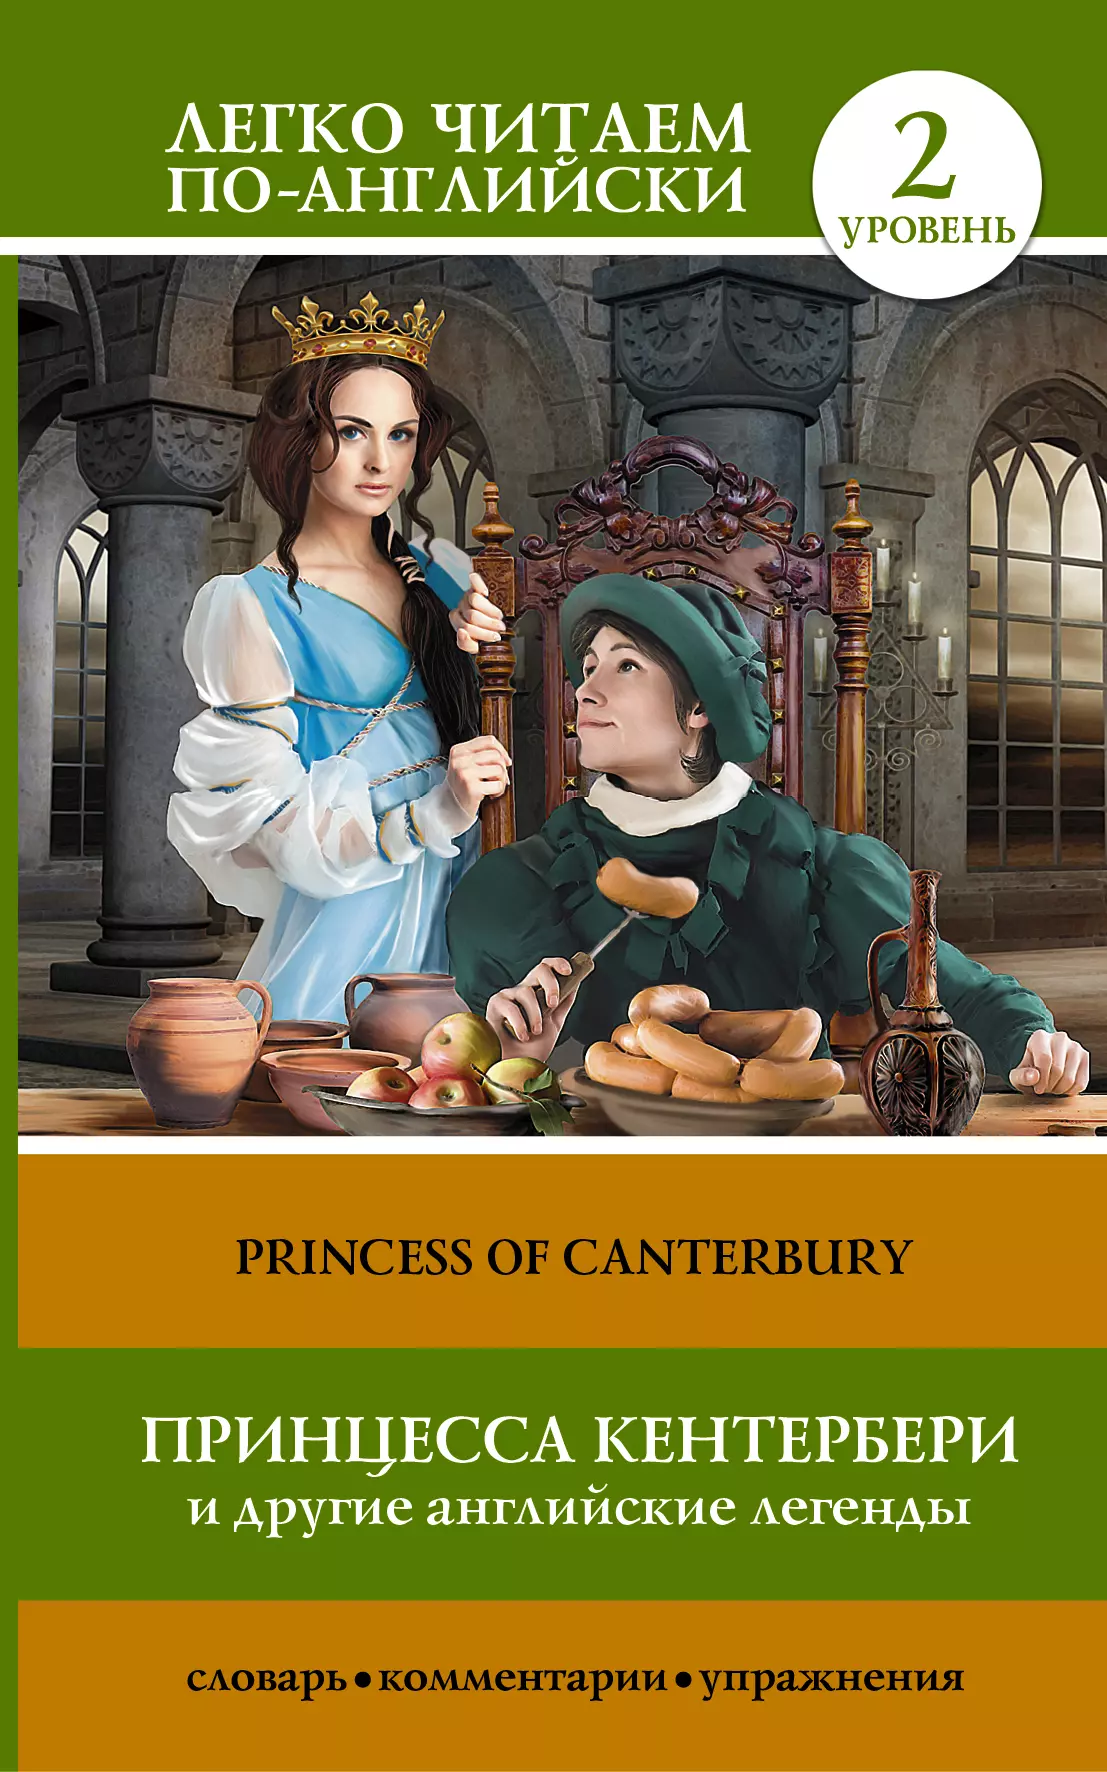 Принцесса Кентербери и другие английские легенды. (2 уровень)